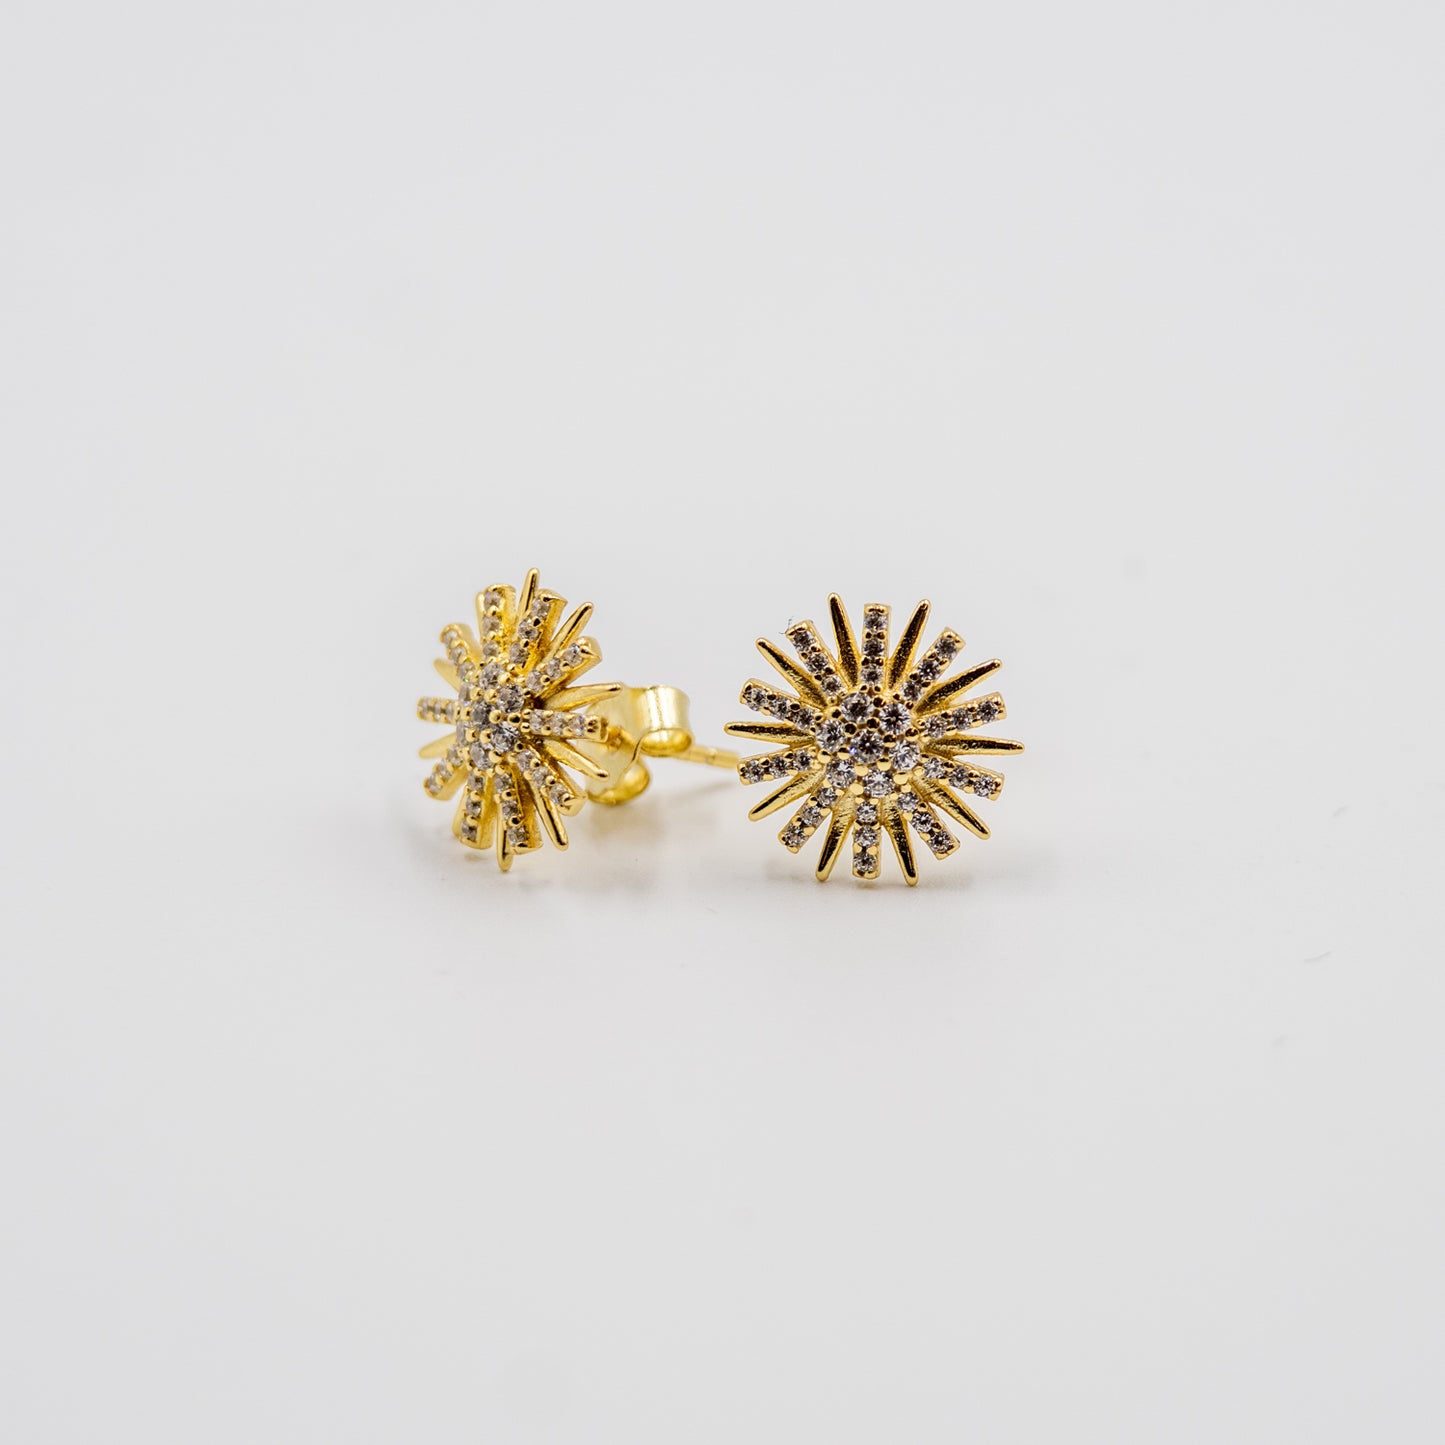 DK- 925-151 gold tone sterling silver star earrings